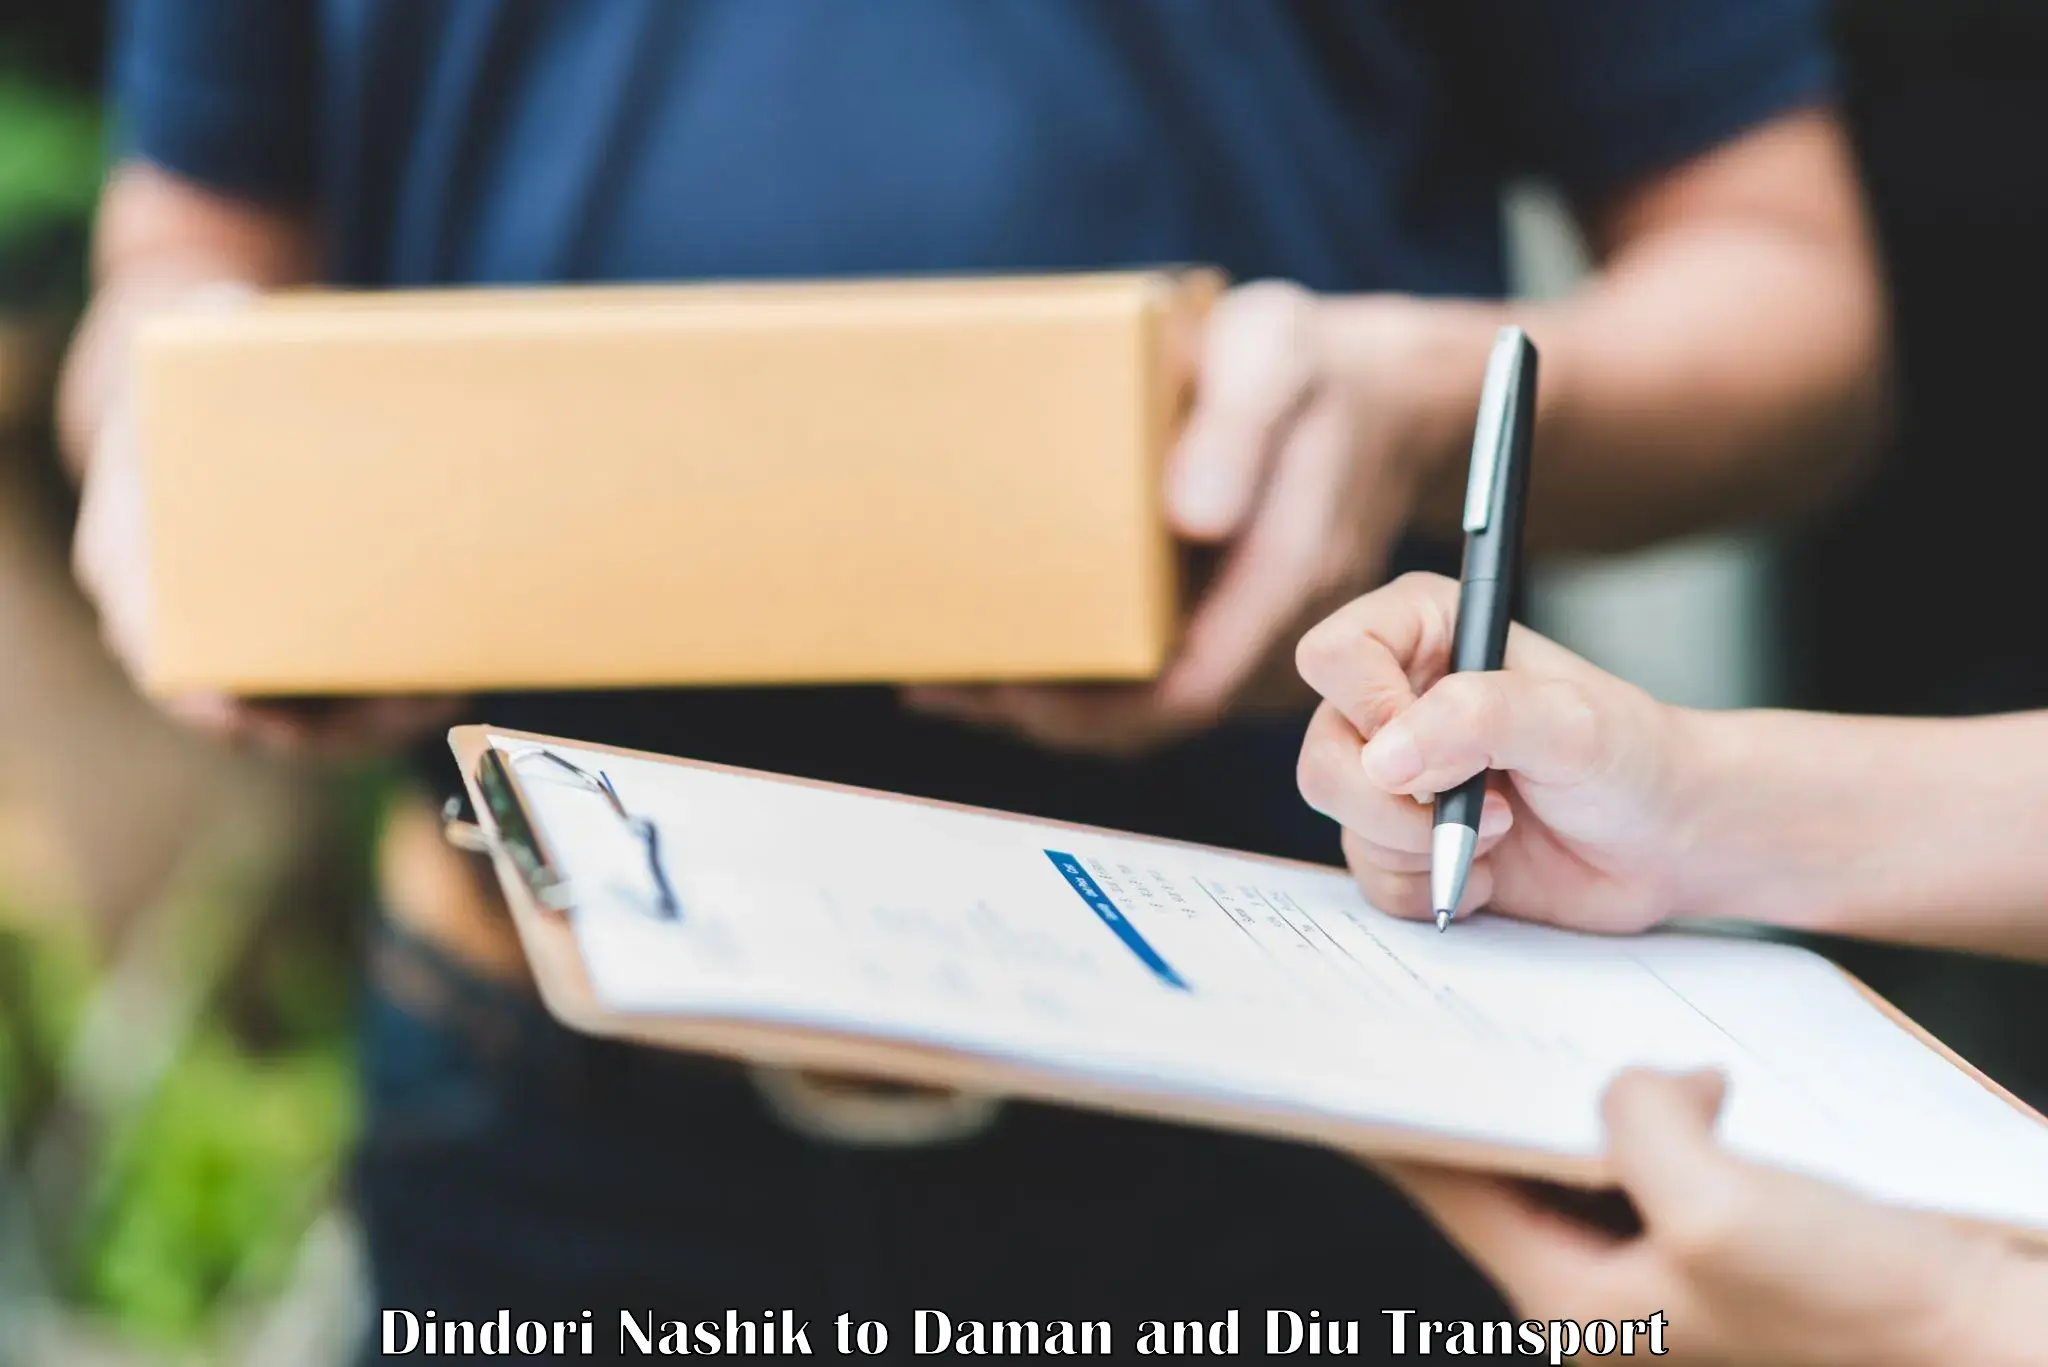 Online transport service Dindori Nashik to Daman and Diu